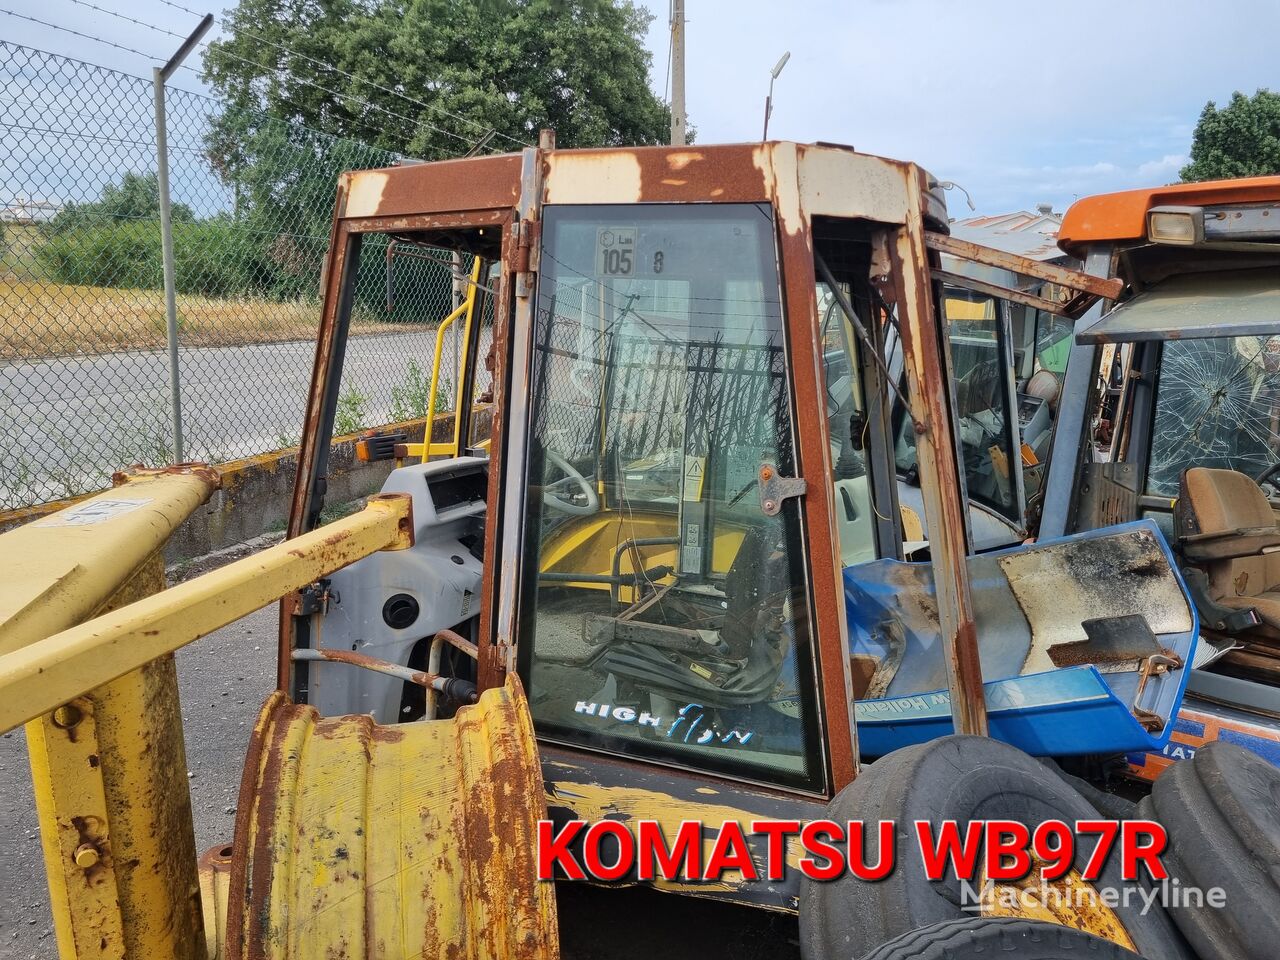 Komatsu traktorgrävare för delar